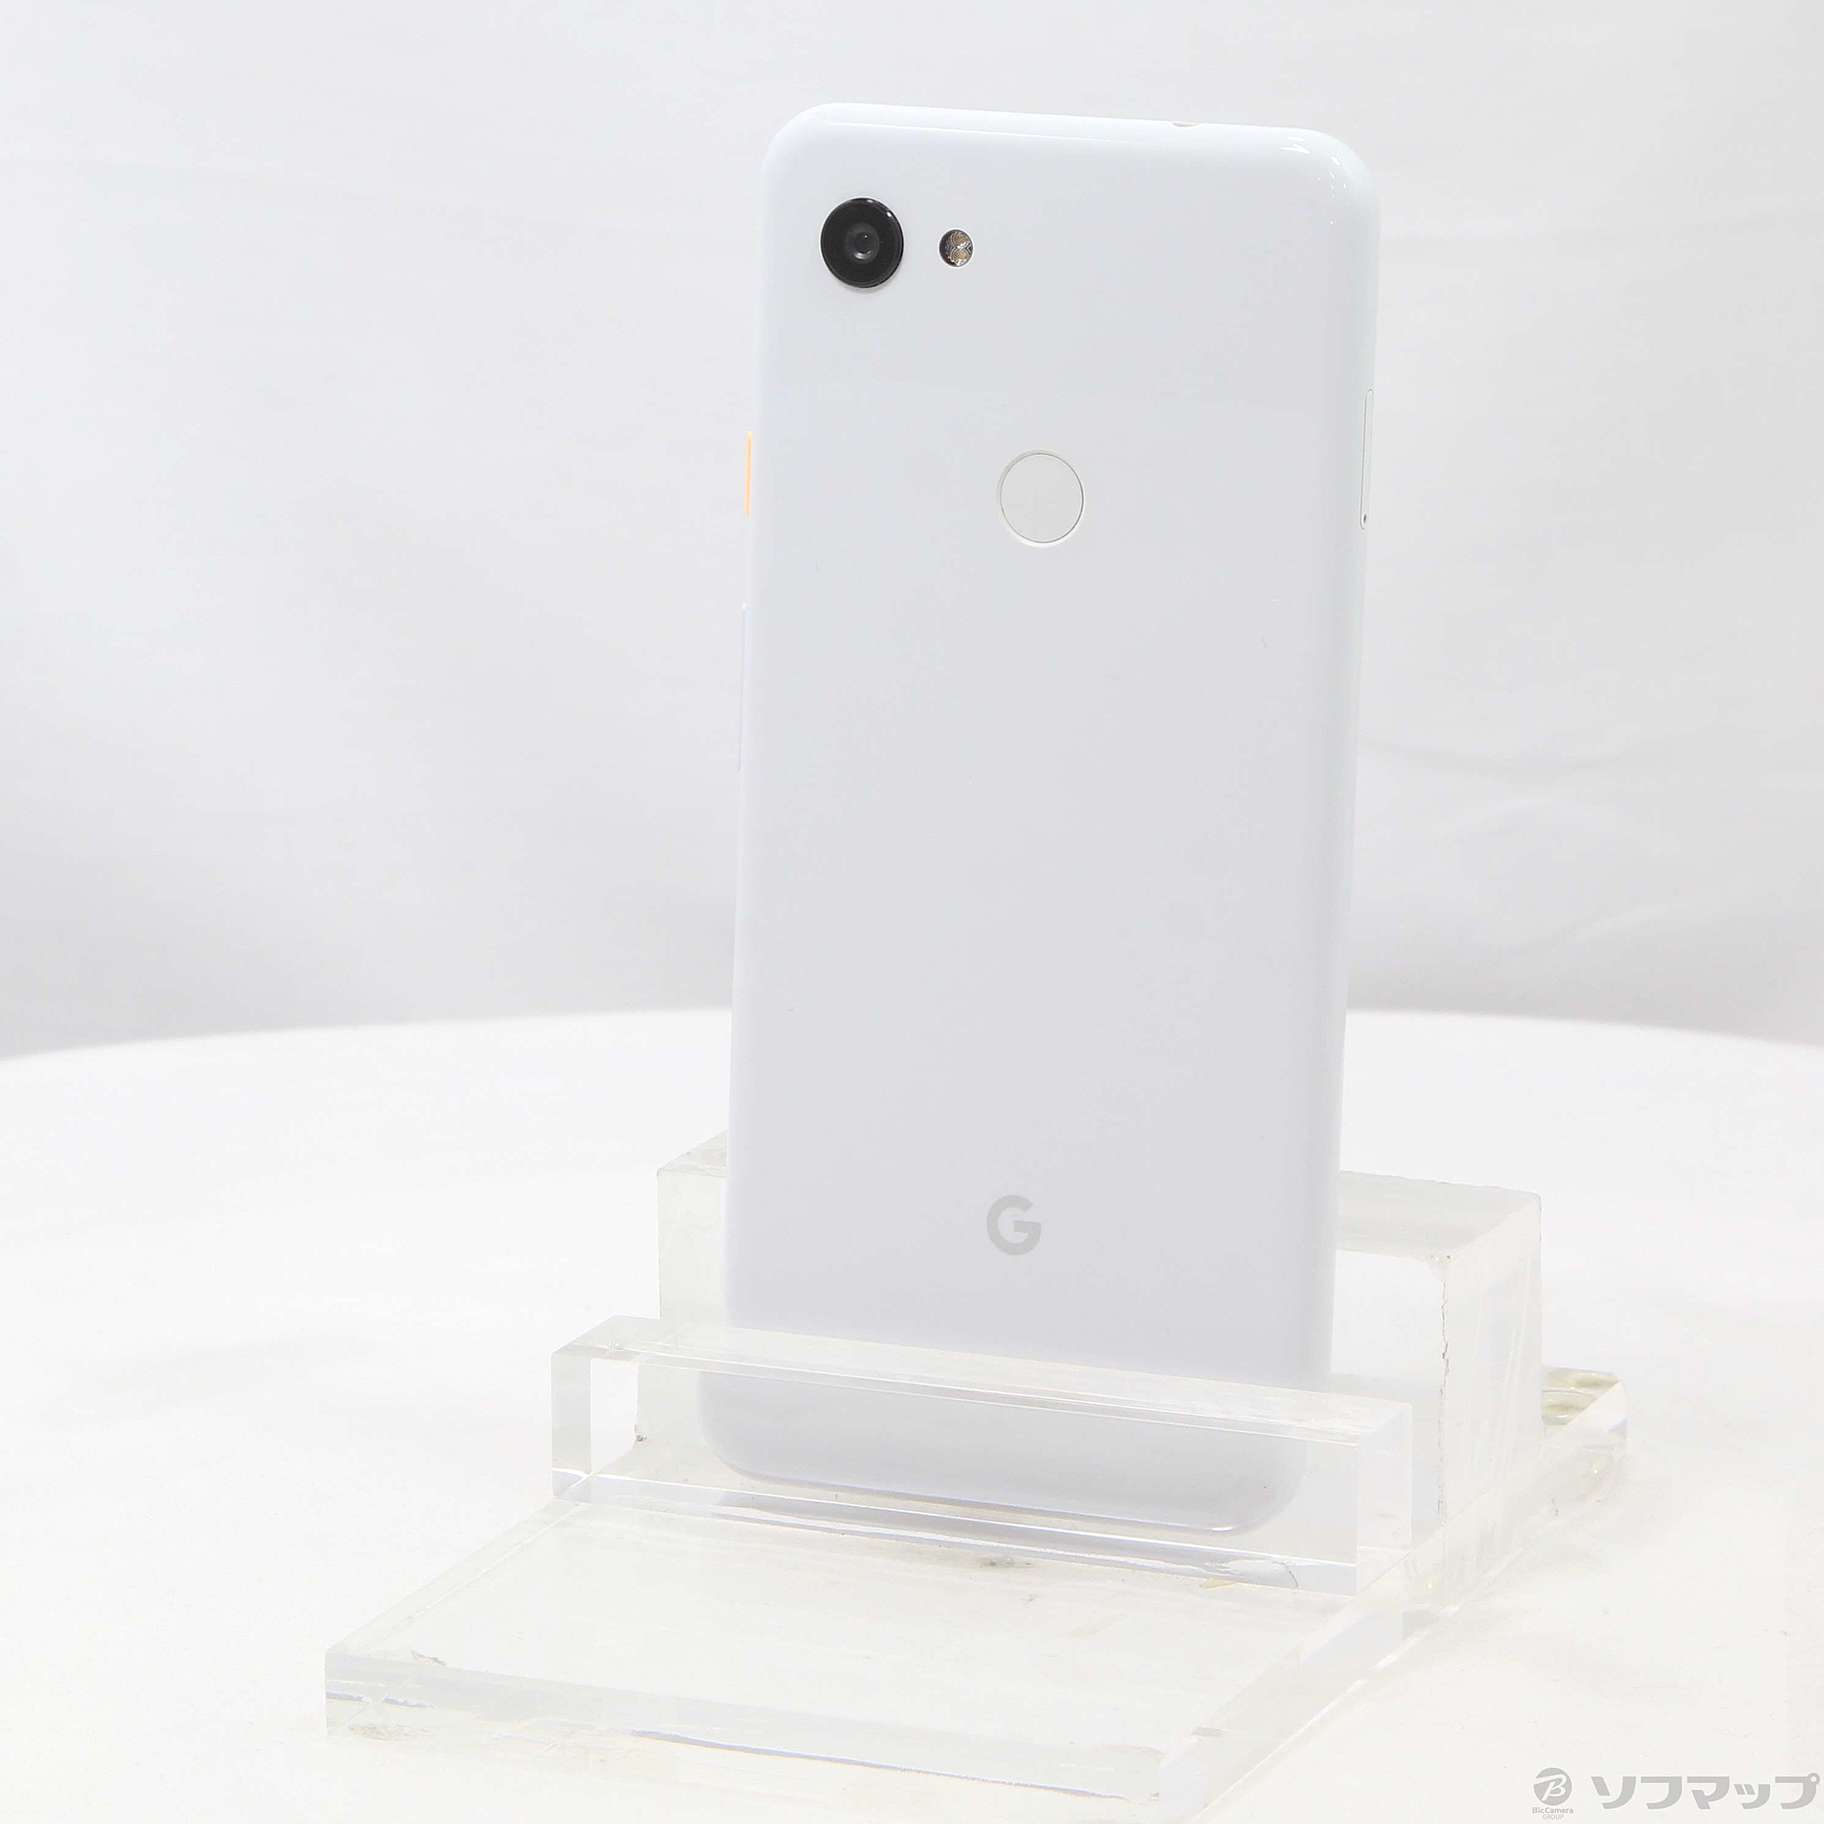 google pixel 3a XL 64g white sim free